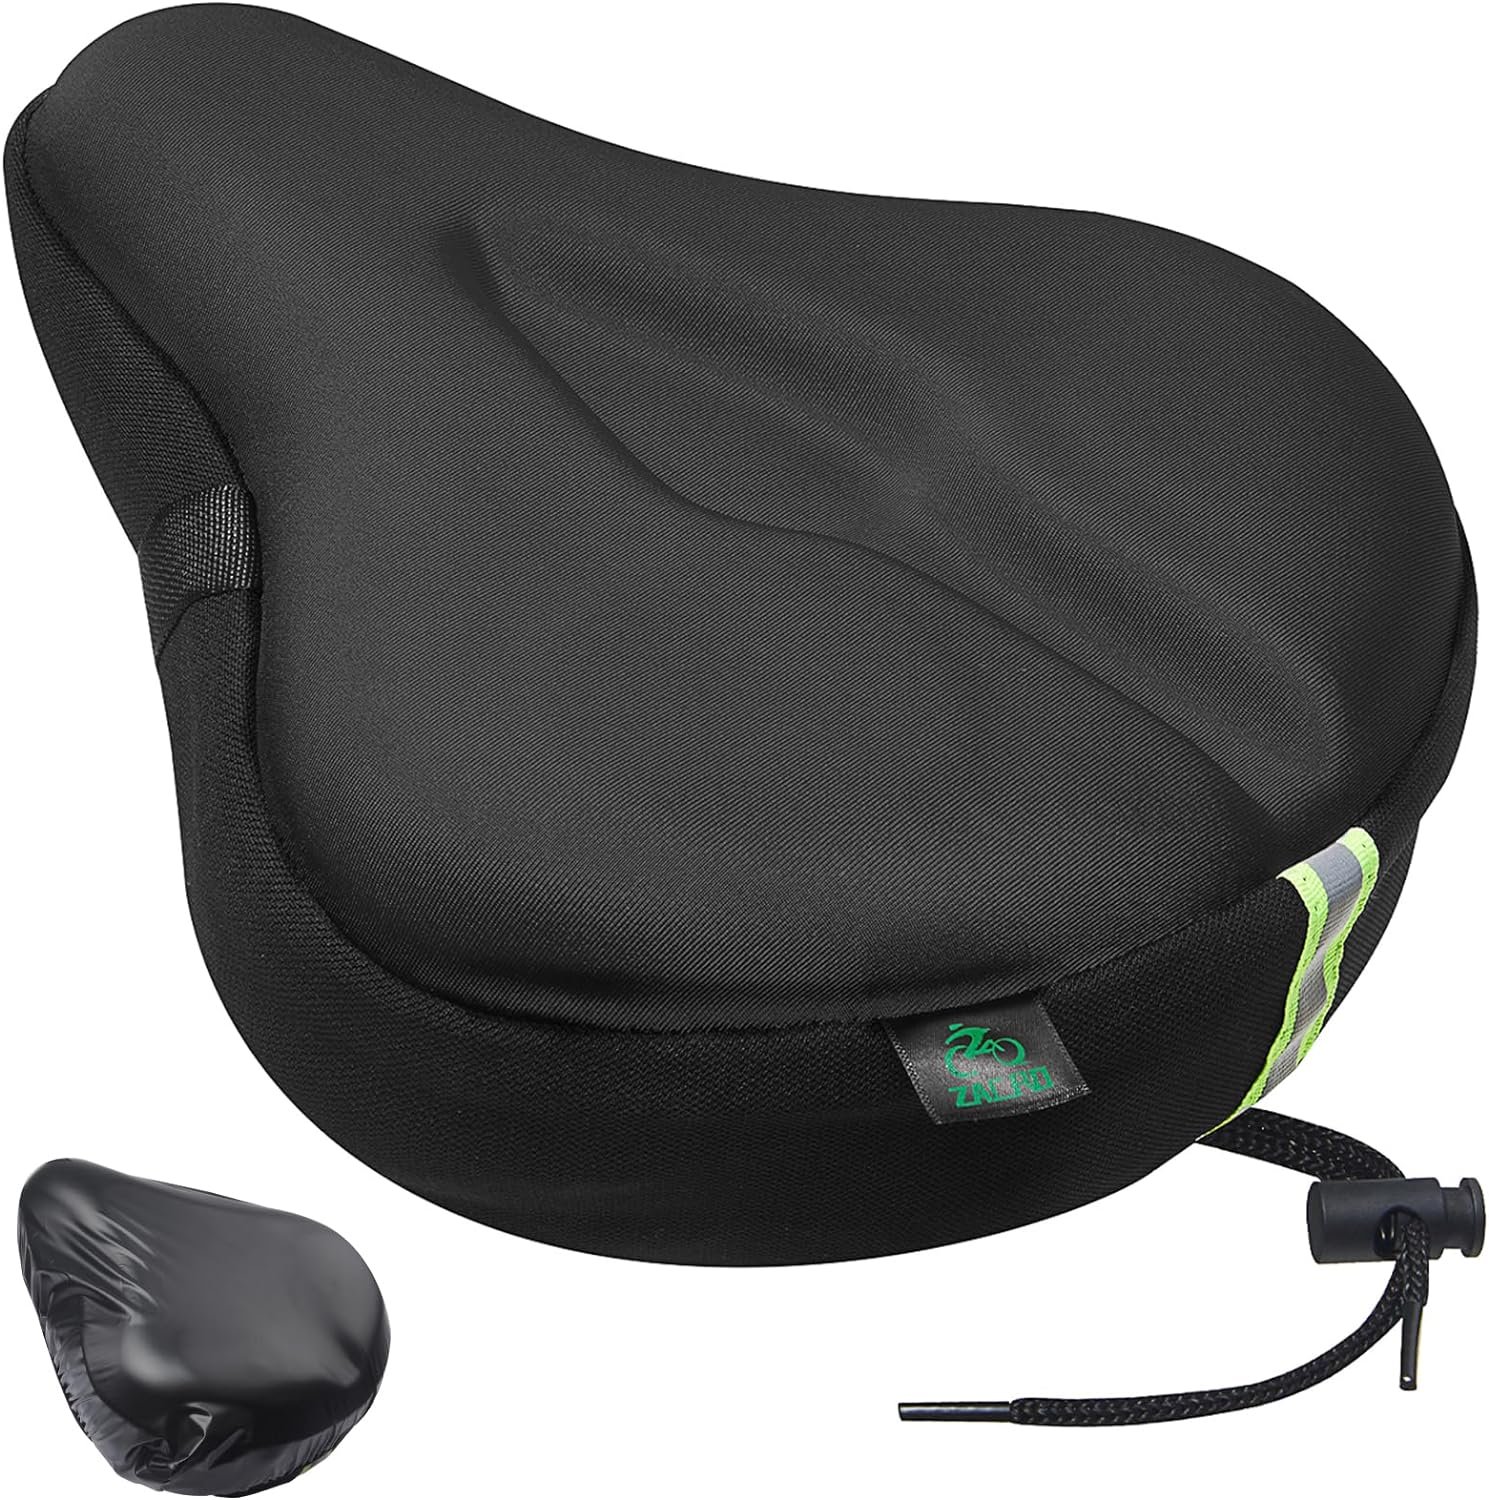 Zacro Bike Seat Cushion Review